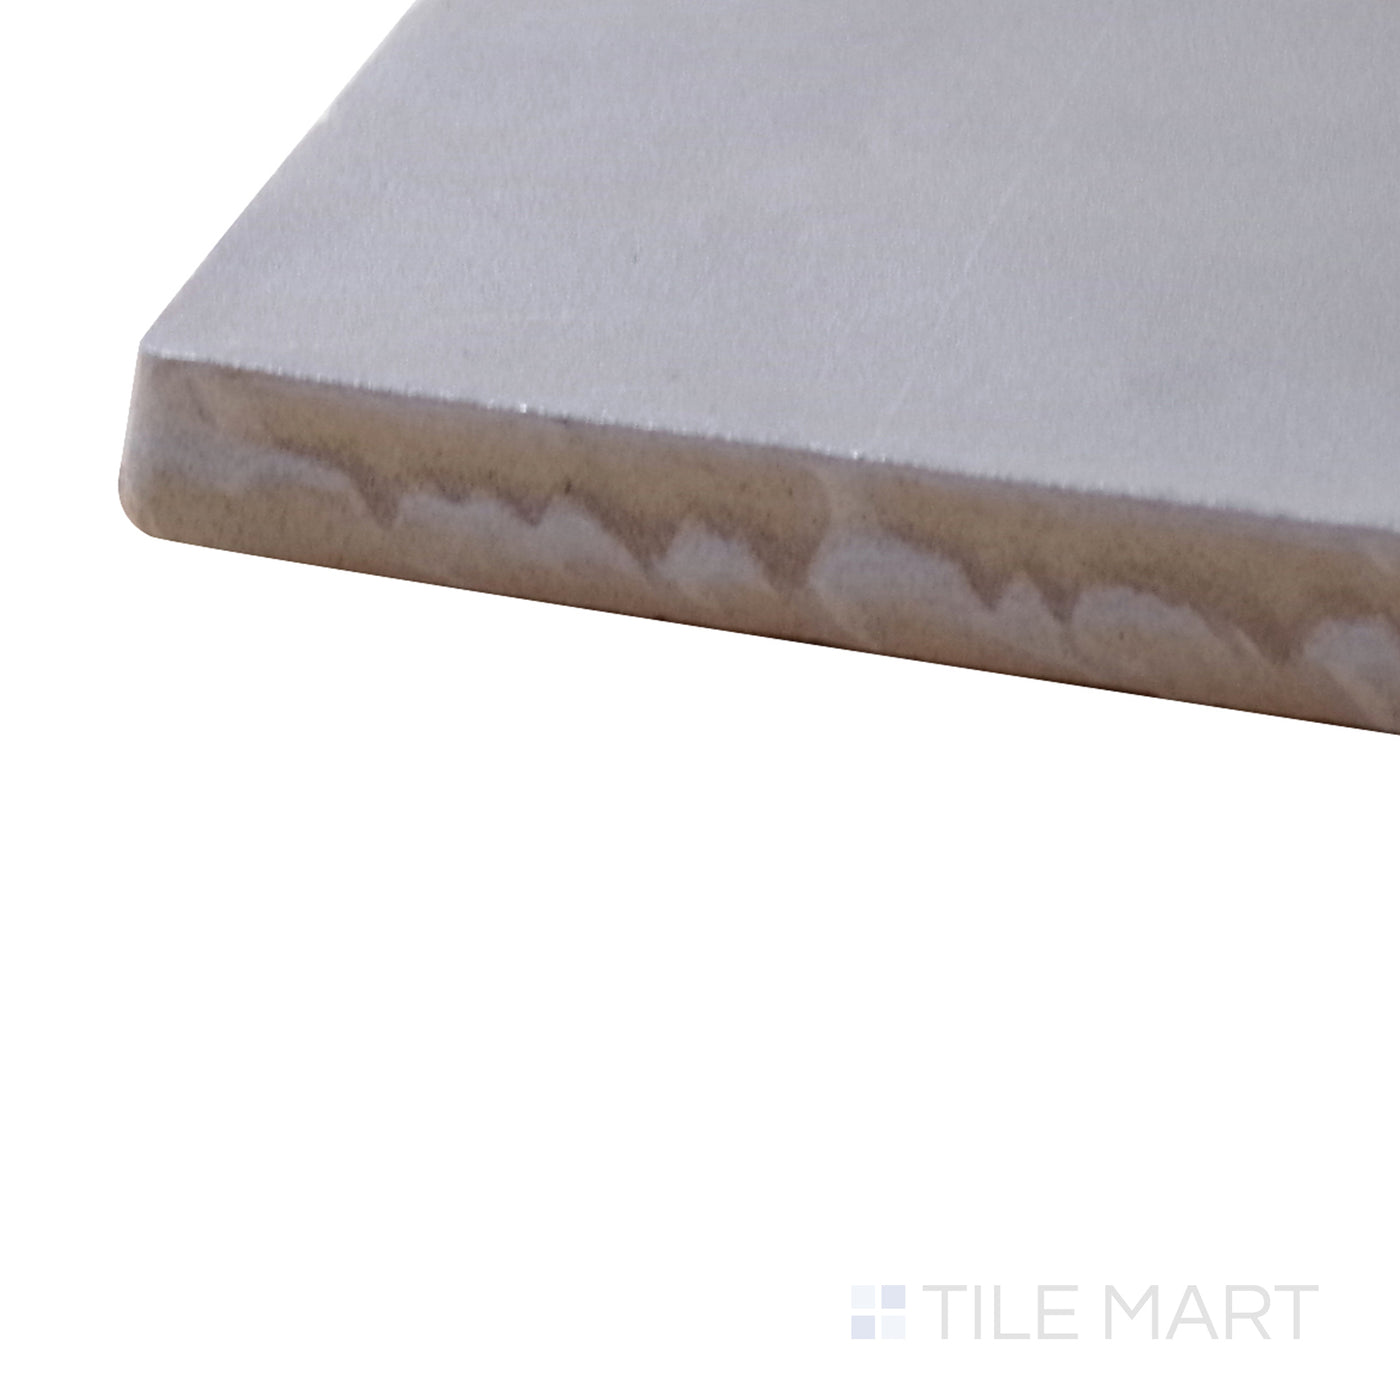 Mallorca Ceramic Field Tile 4X4 Grey Matte